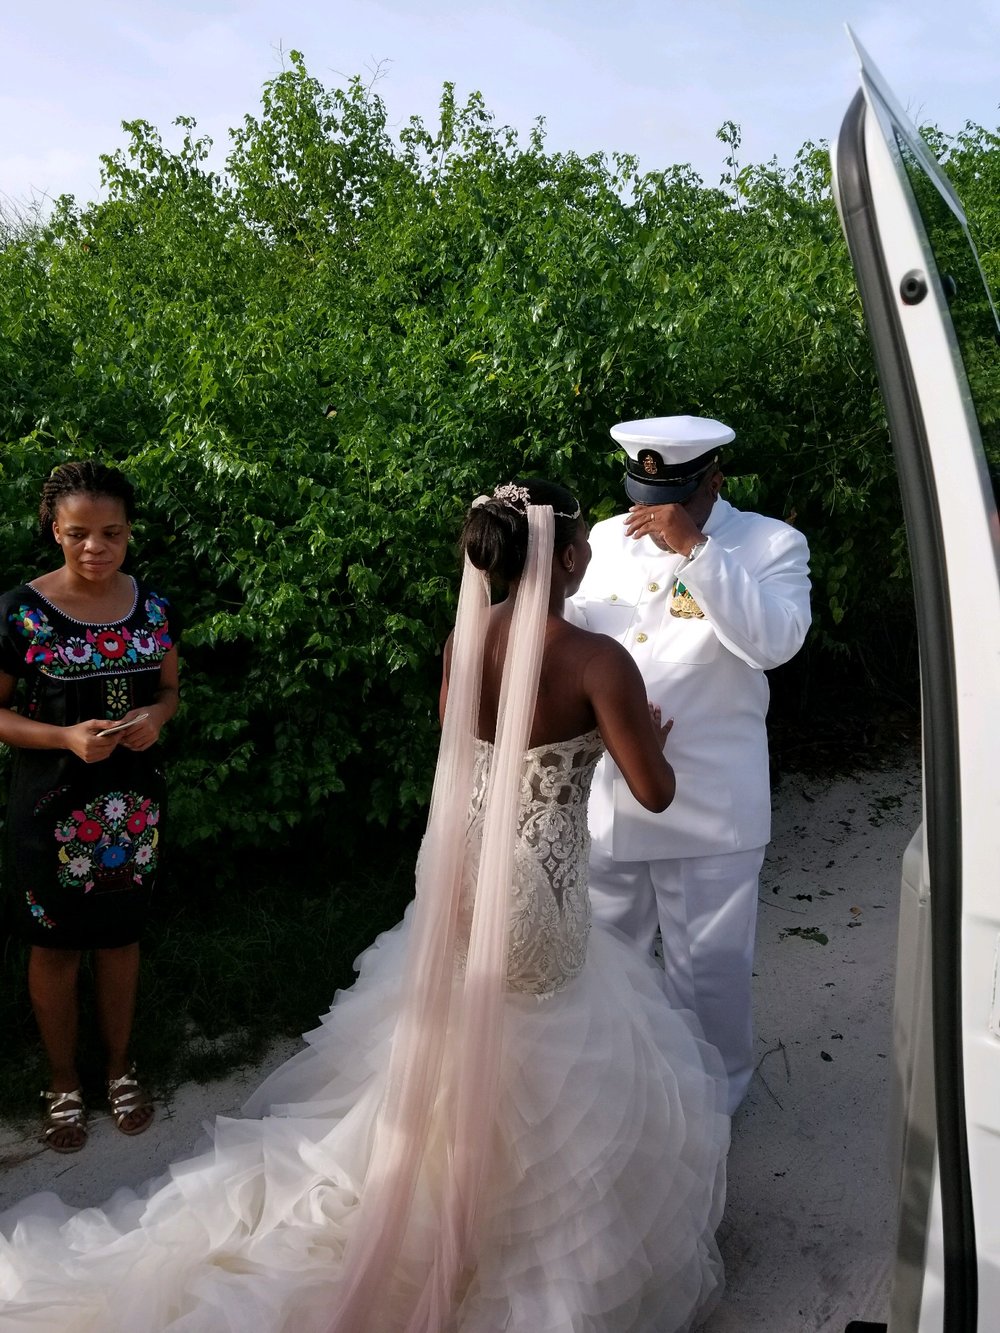 Black Destination Bride - BlackDesti Wedding Countdown Journal - Bridefriends Podcast - 0 Playa del Carmen Mexico - Blue Venado - Shenko Photography - Dad Navy Chief Uniform3.JPG